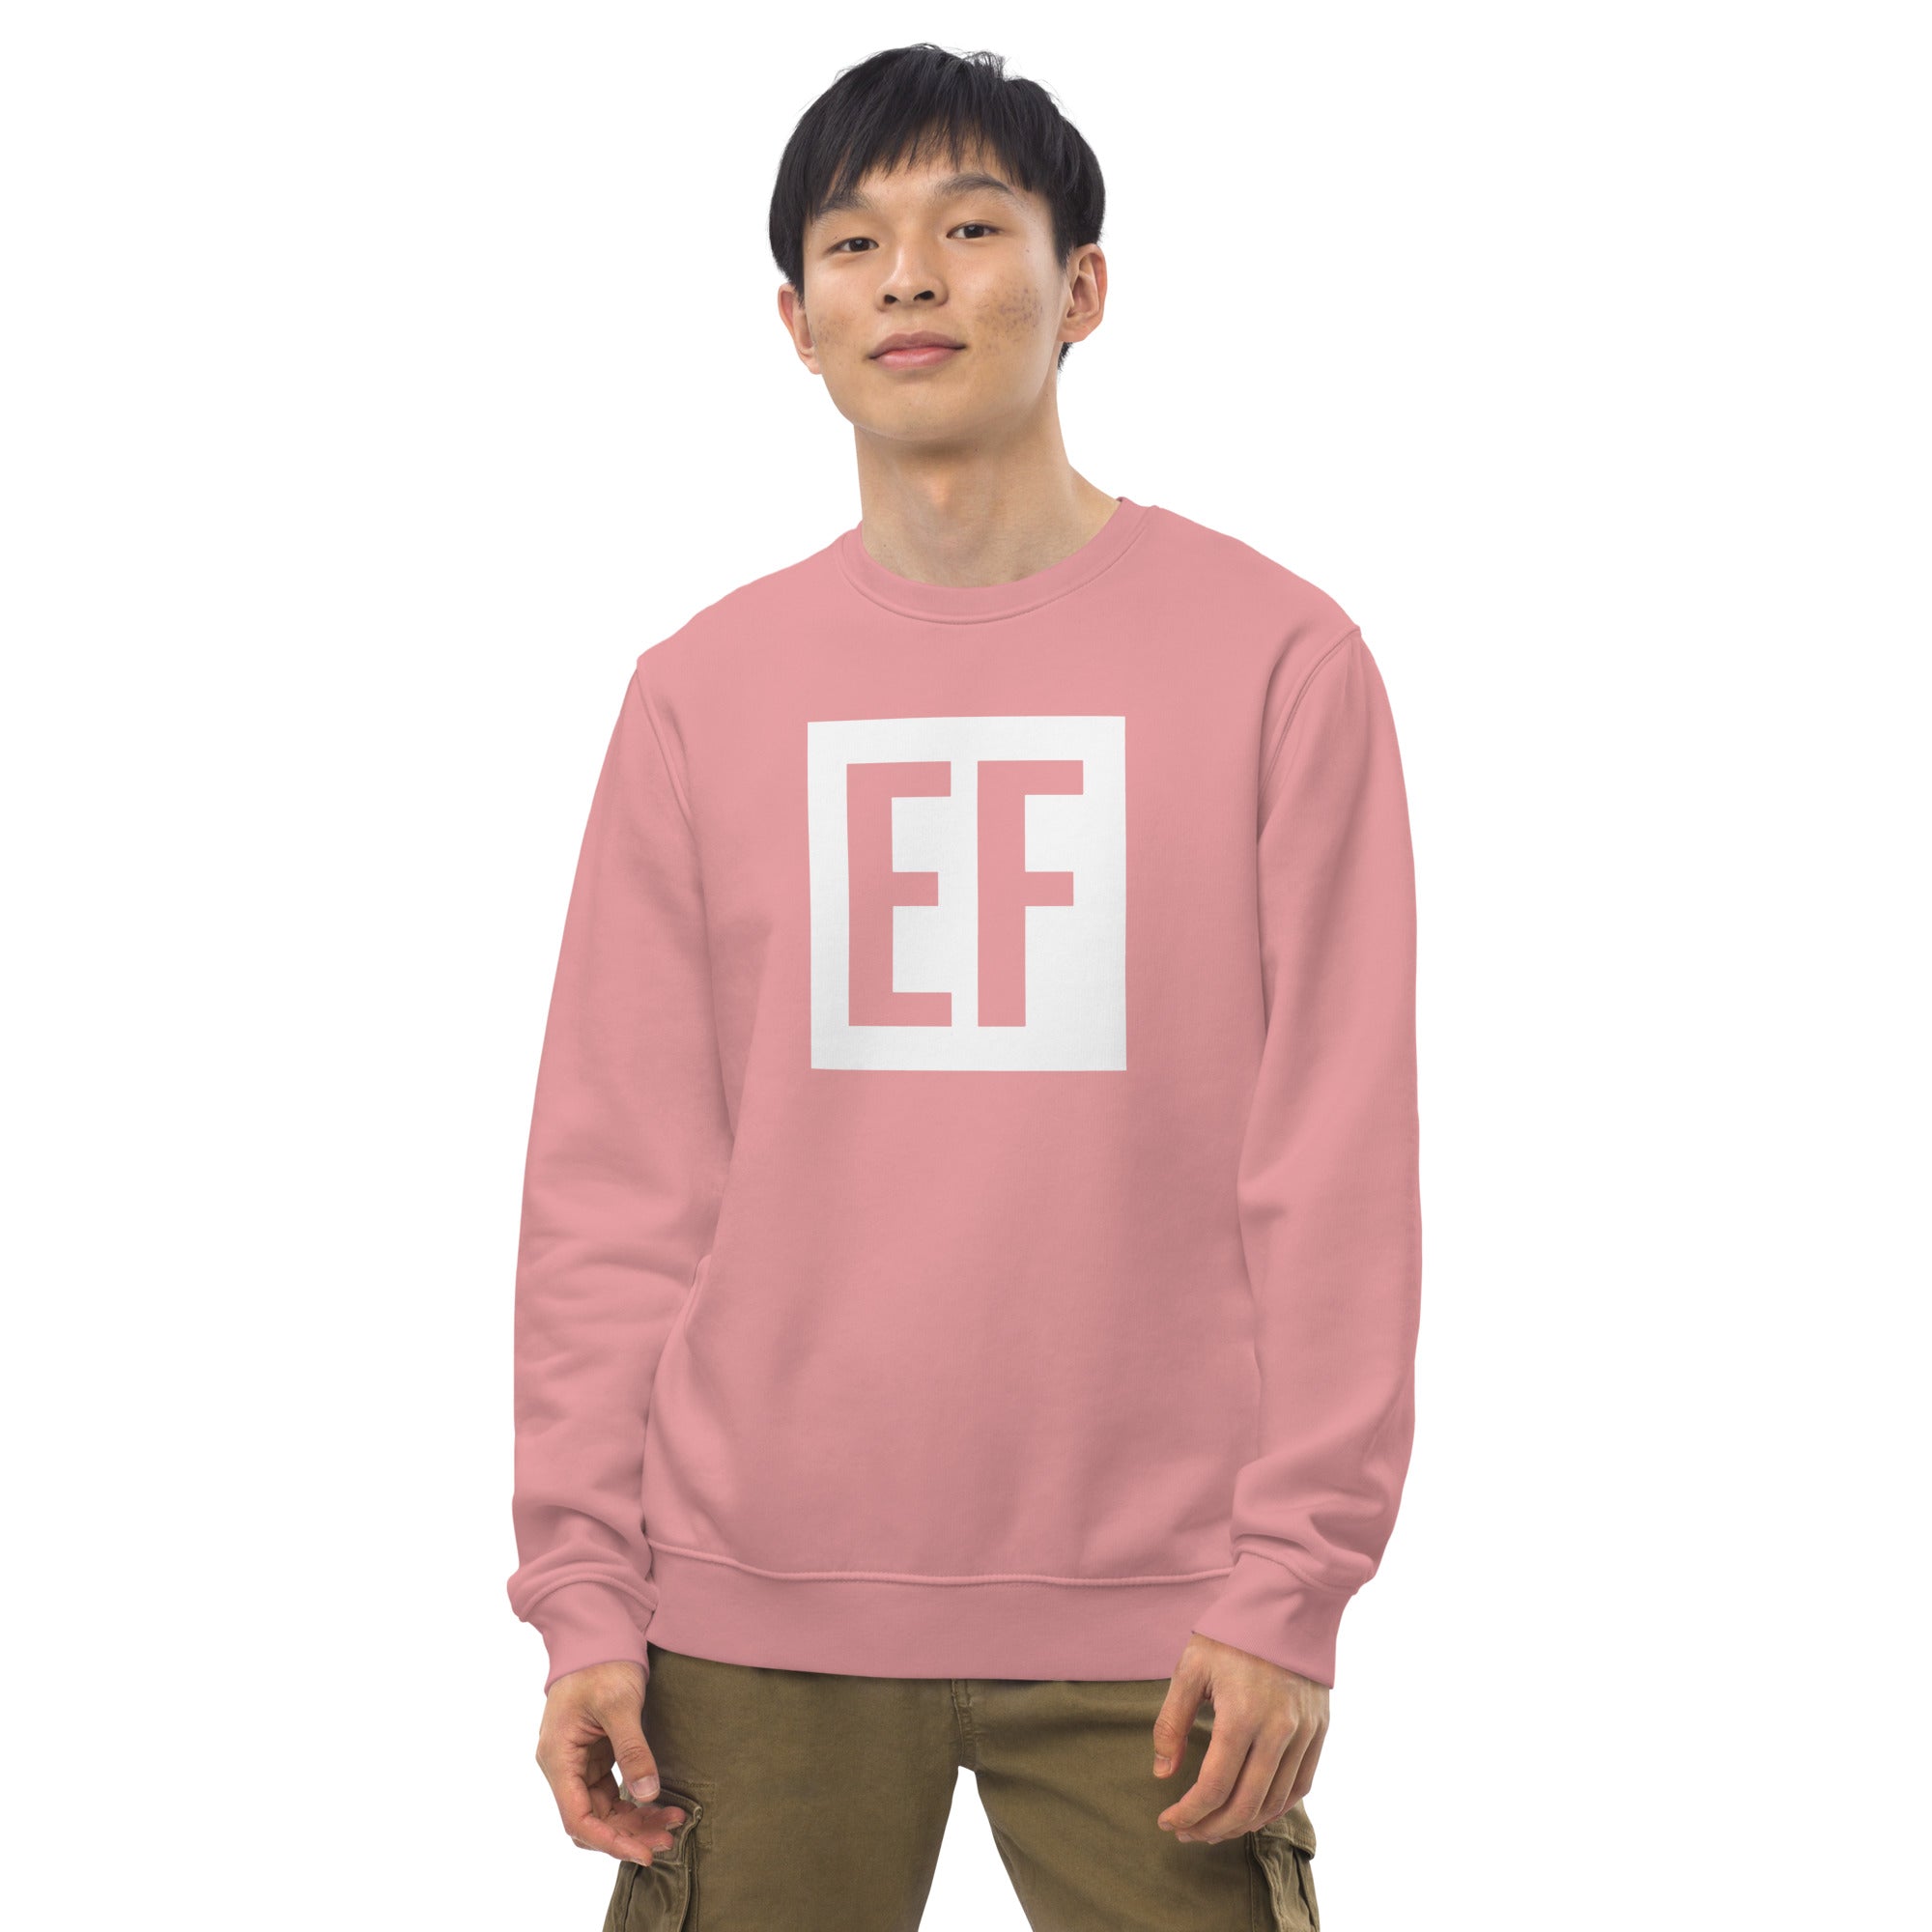 Espritfit Limitless Eco Sweatshirt - Espritfit